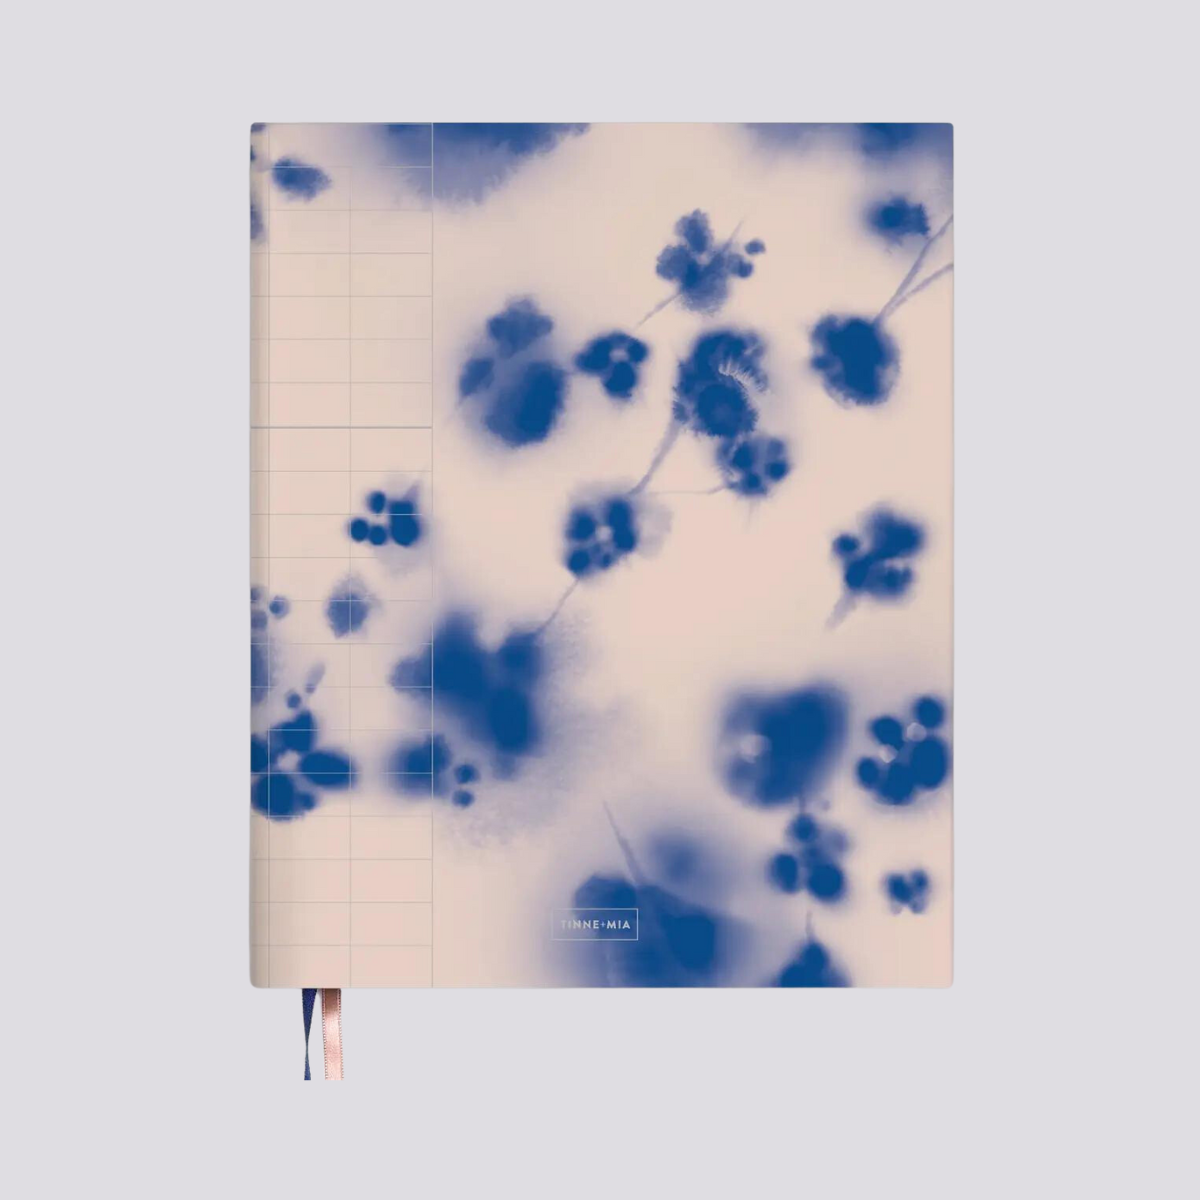 Ce magnifique carnet est orné d'une aquarelle délicate représentant un cerisier japonais en fleurs. Les détails argentés ajoutent une touche d'élégance au devant du cahier, tandis que les signets rose et bleu enlacent subtilement l'ensemble.